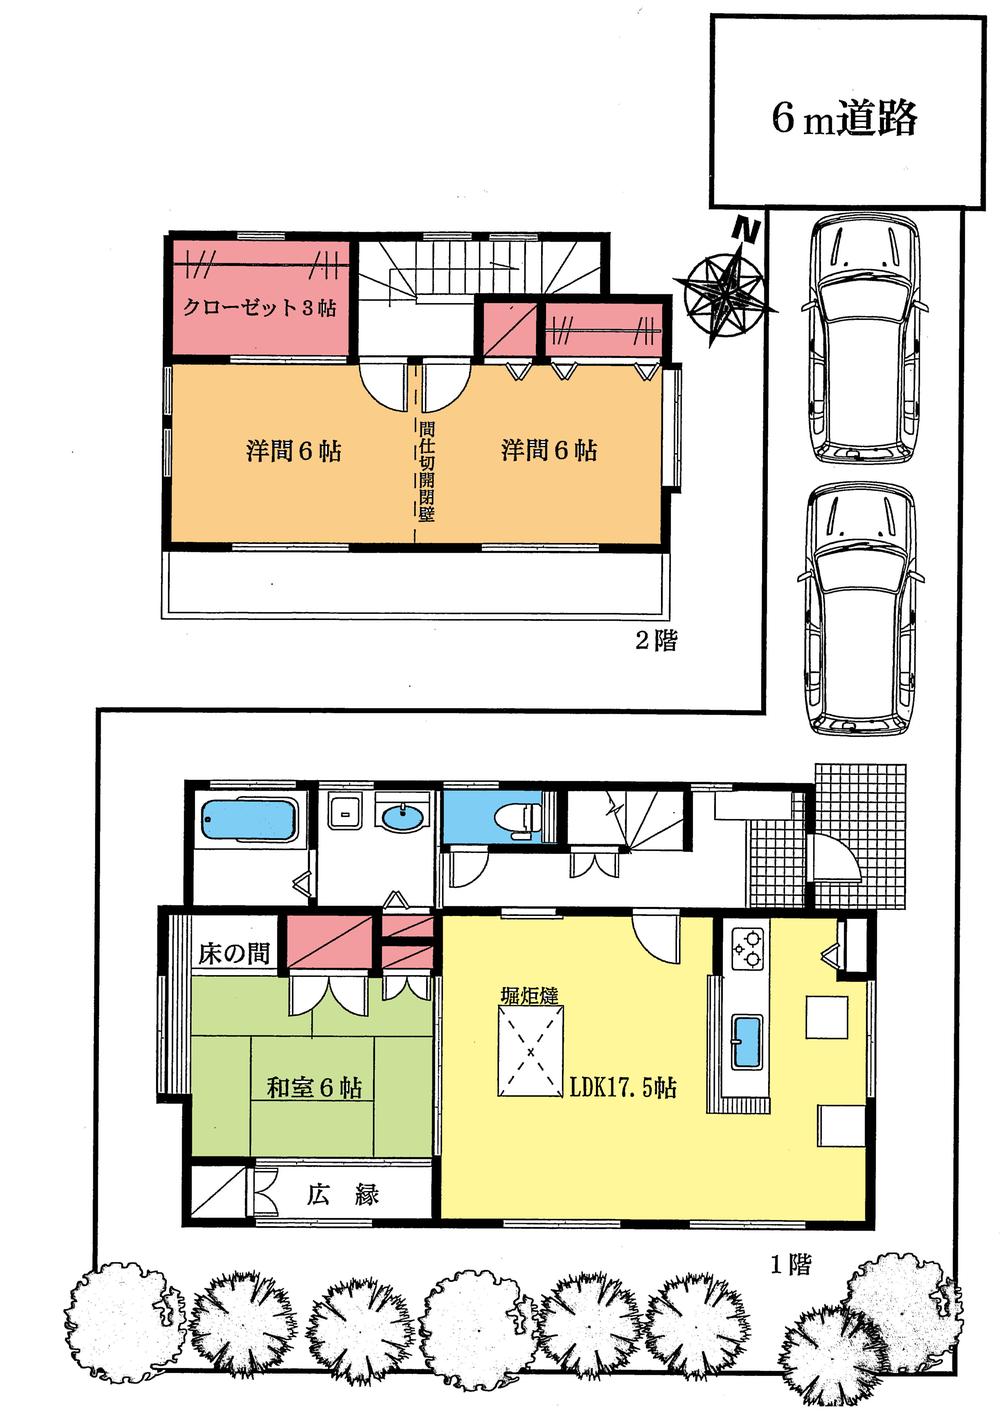 Floor plan. 17.8 million yen, 3LDK + S (storeroom), Land area 147 sq m , Building area 94.39 sq m Floor